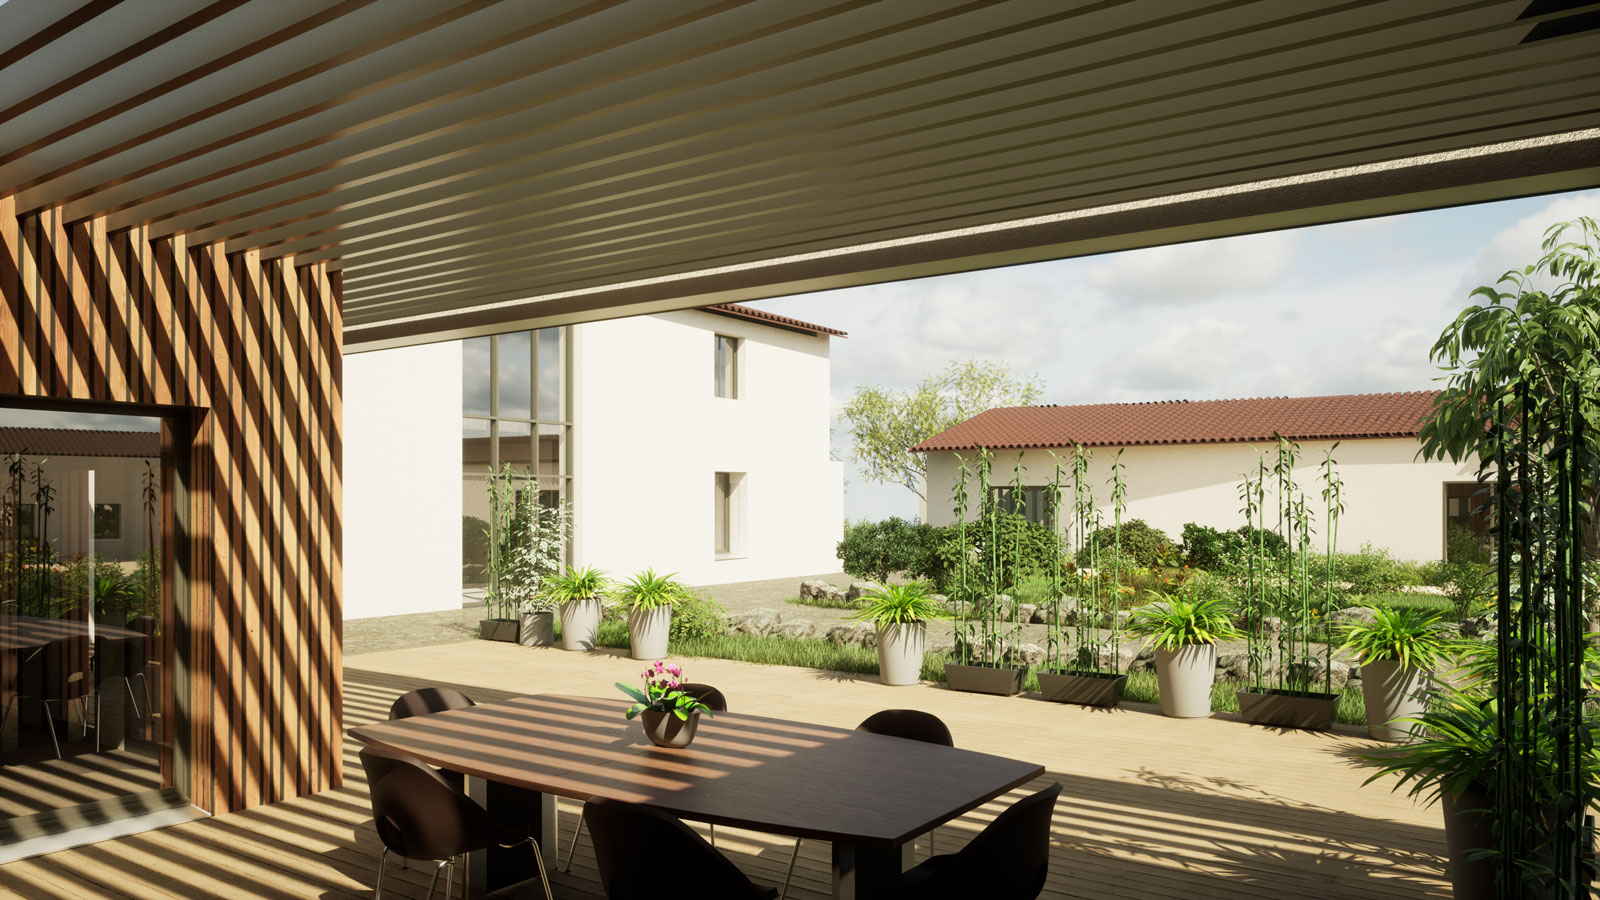 rehabilitation_renovation_architecture_terrasse_jardin_convivial_espaces_de_vie_maison_salles_sur_mer